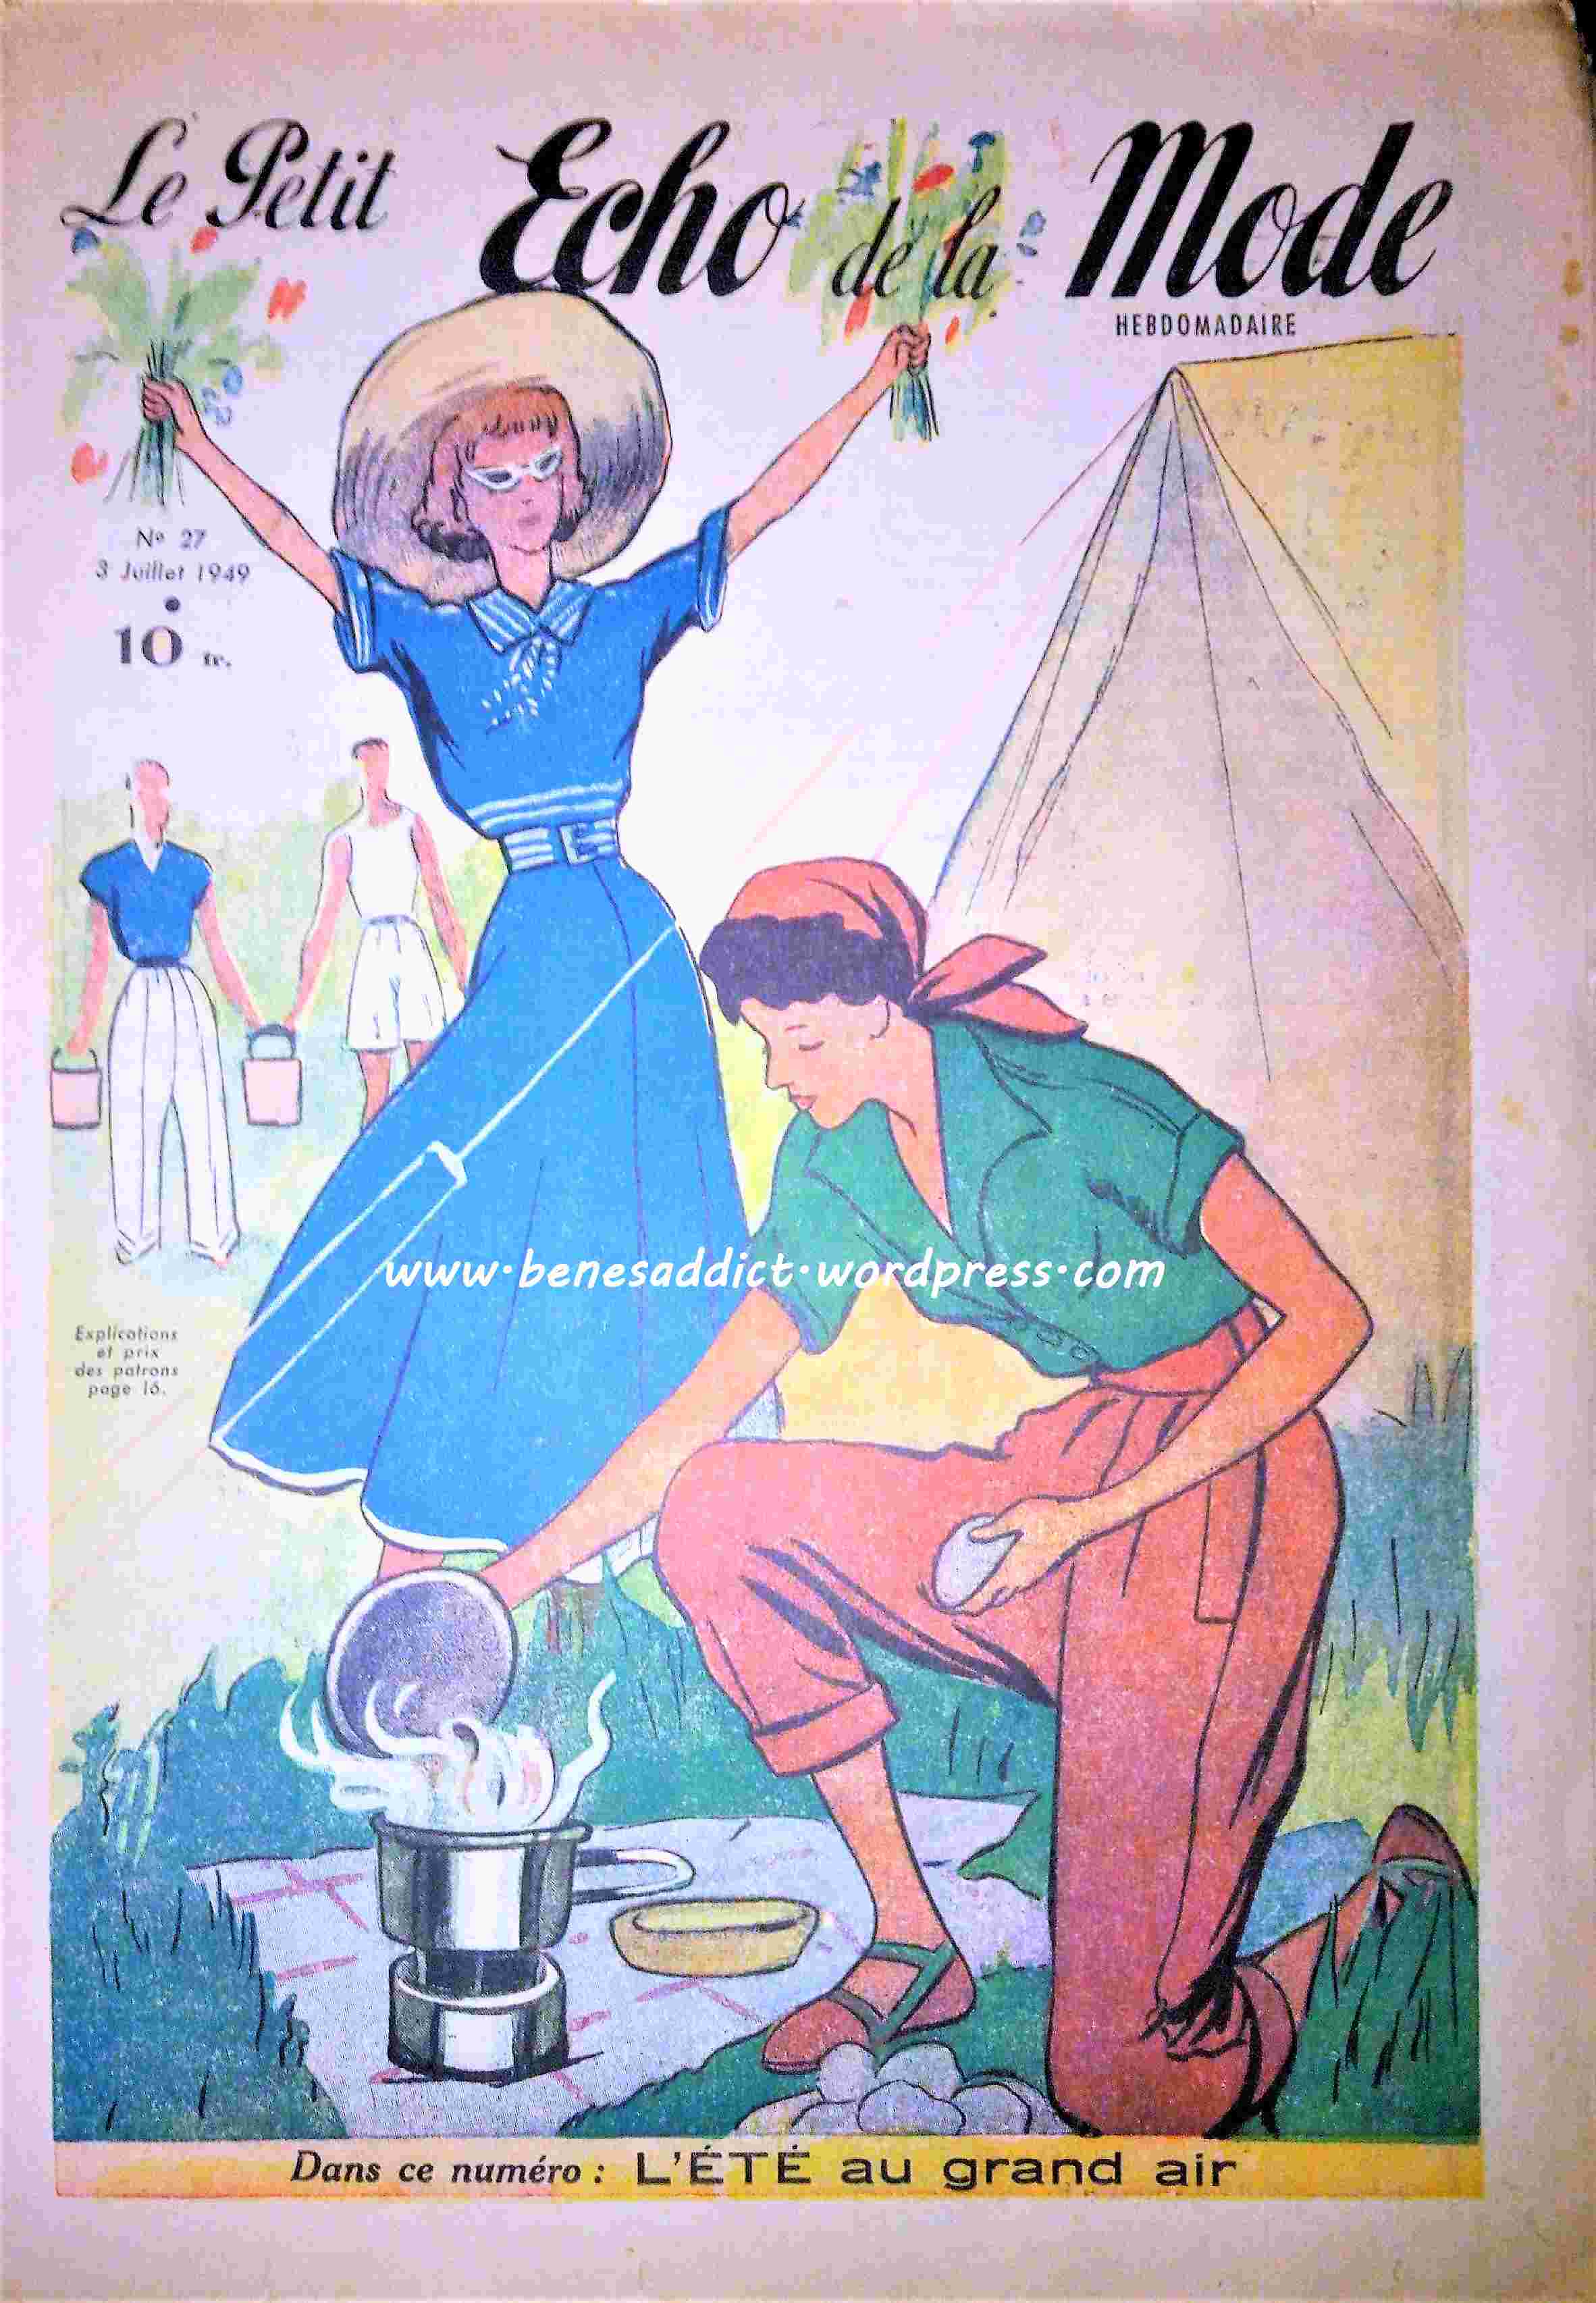 petit echo de la mode juillet 1949 (2)